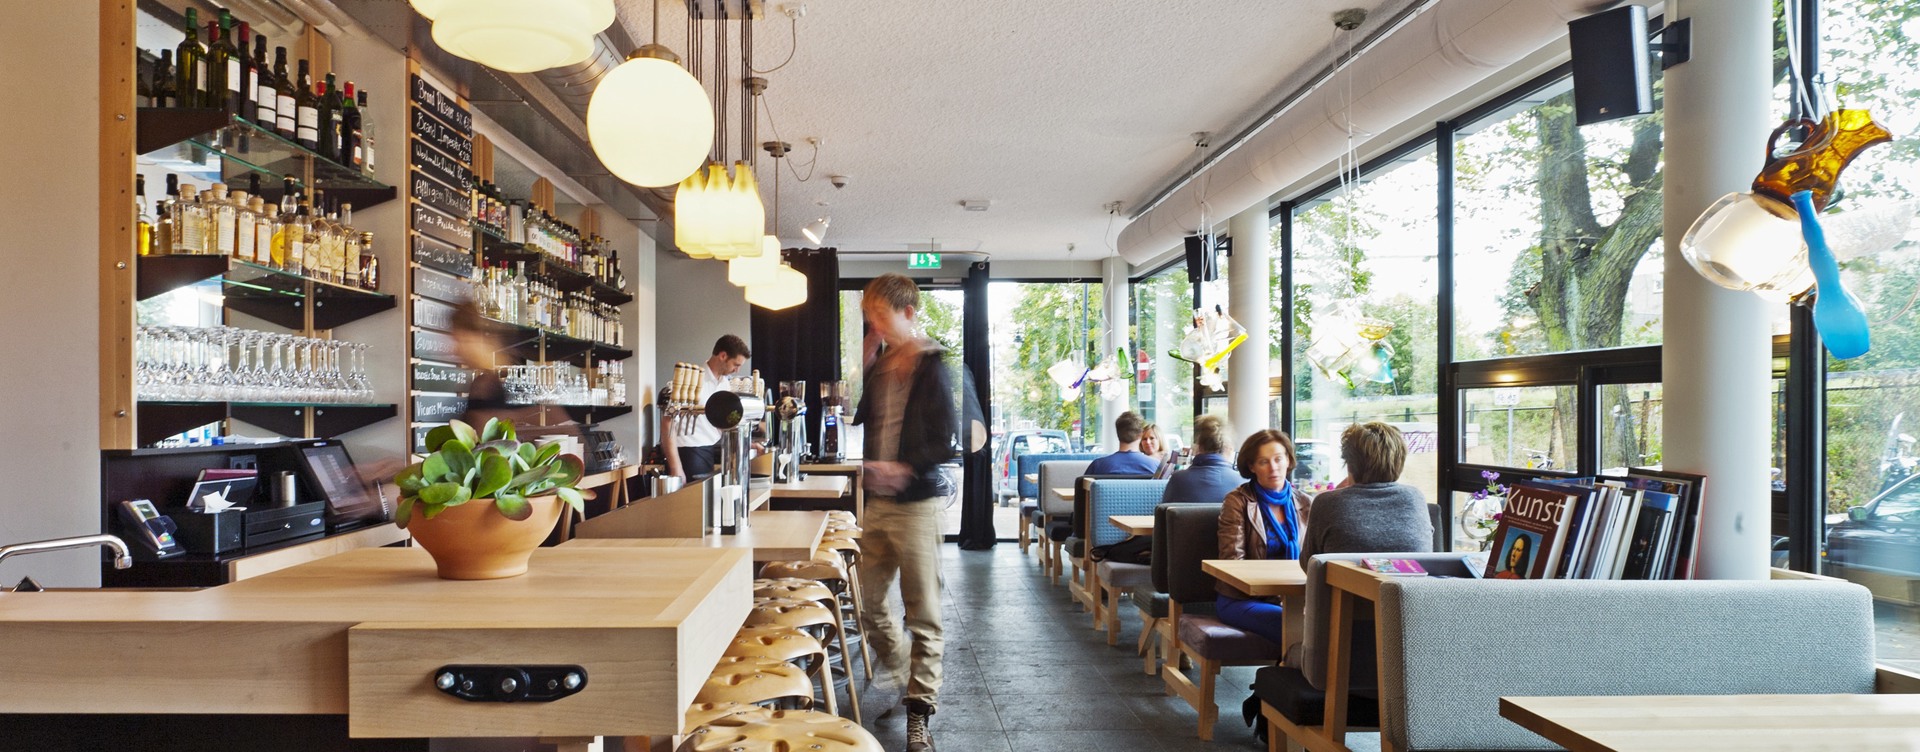 Café Caspar :
un endroit tendance à Arnhem